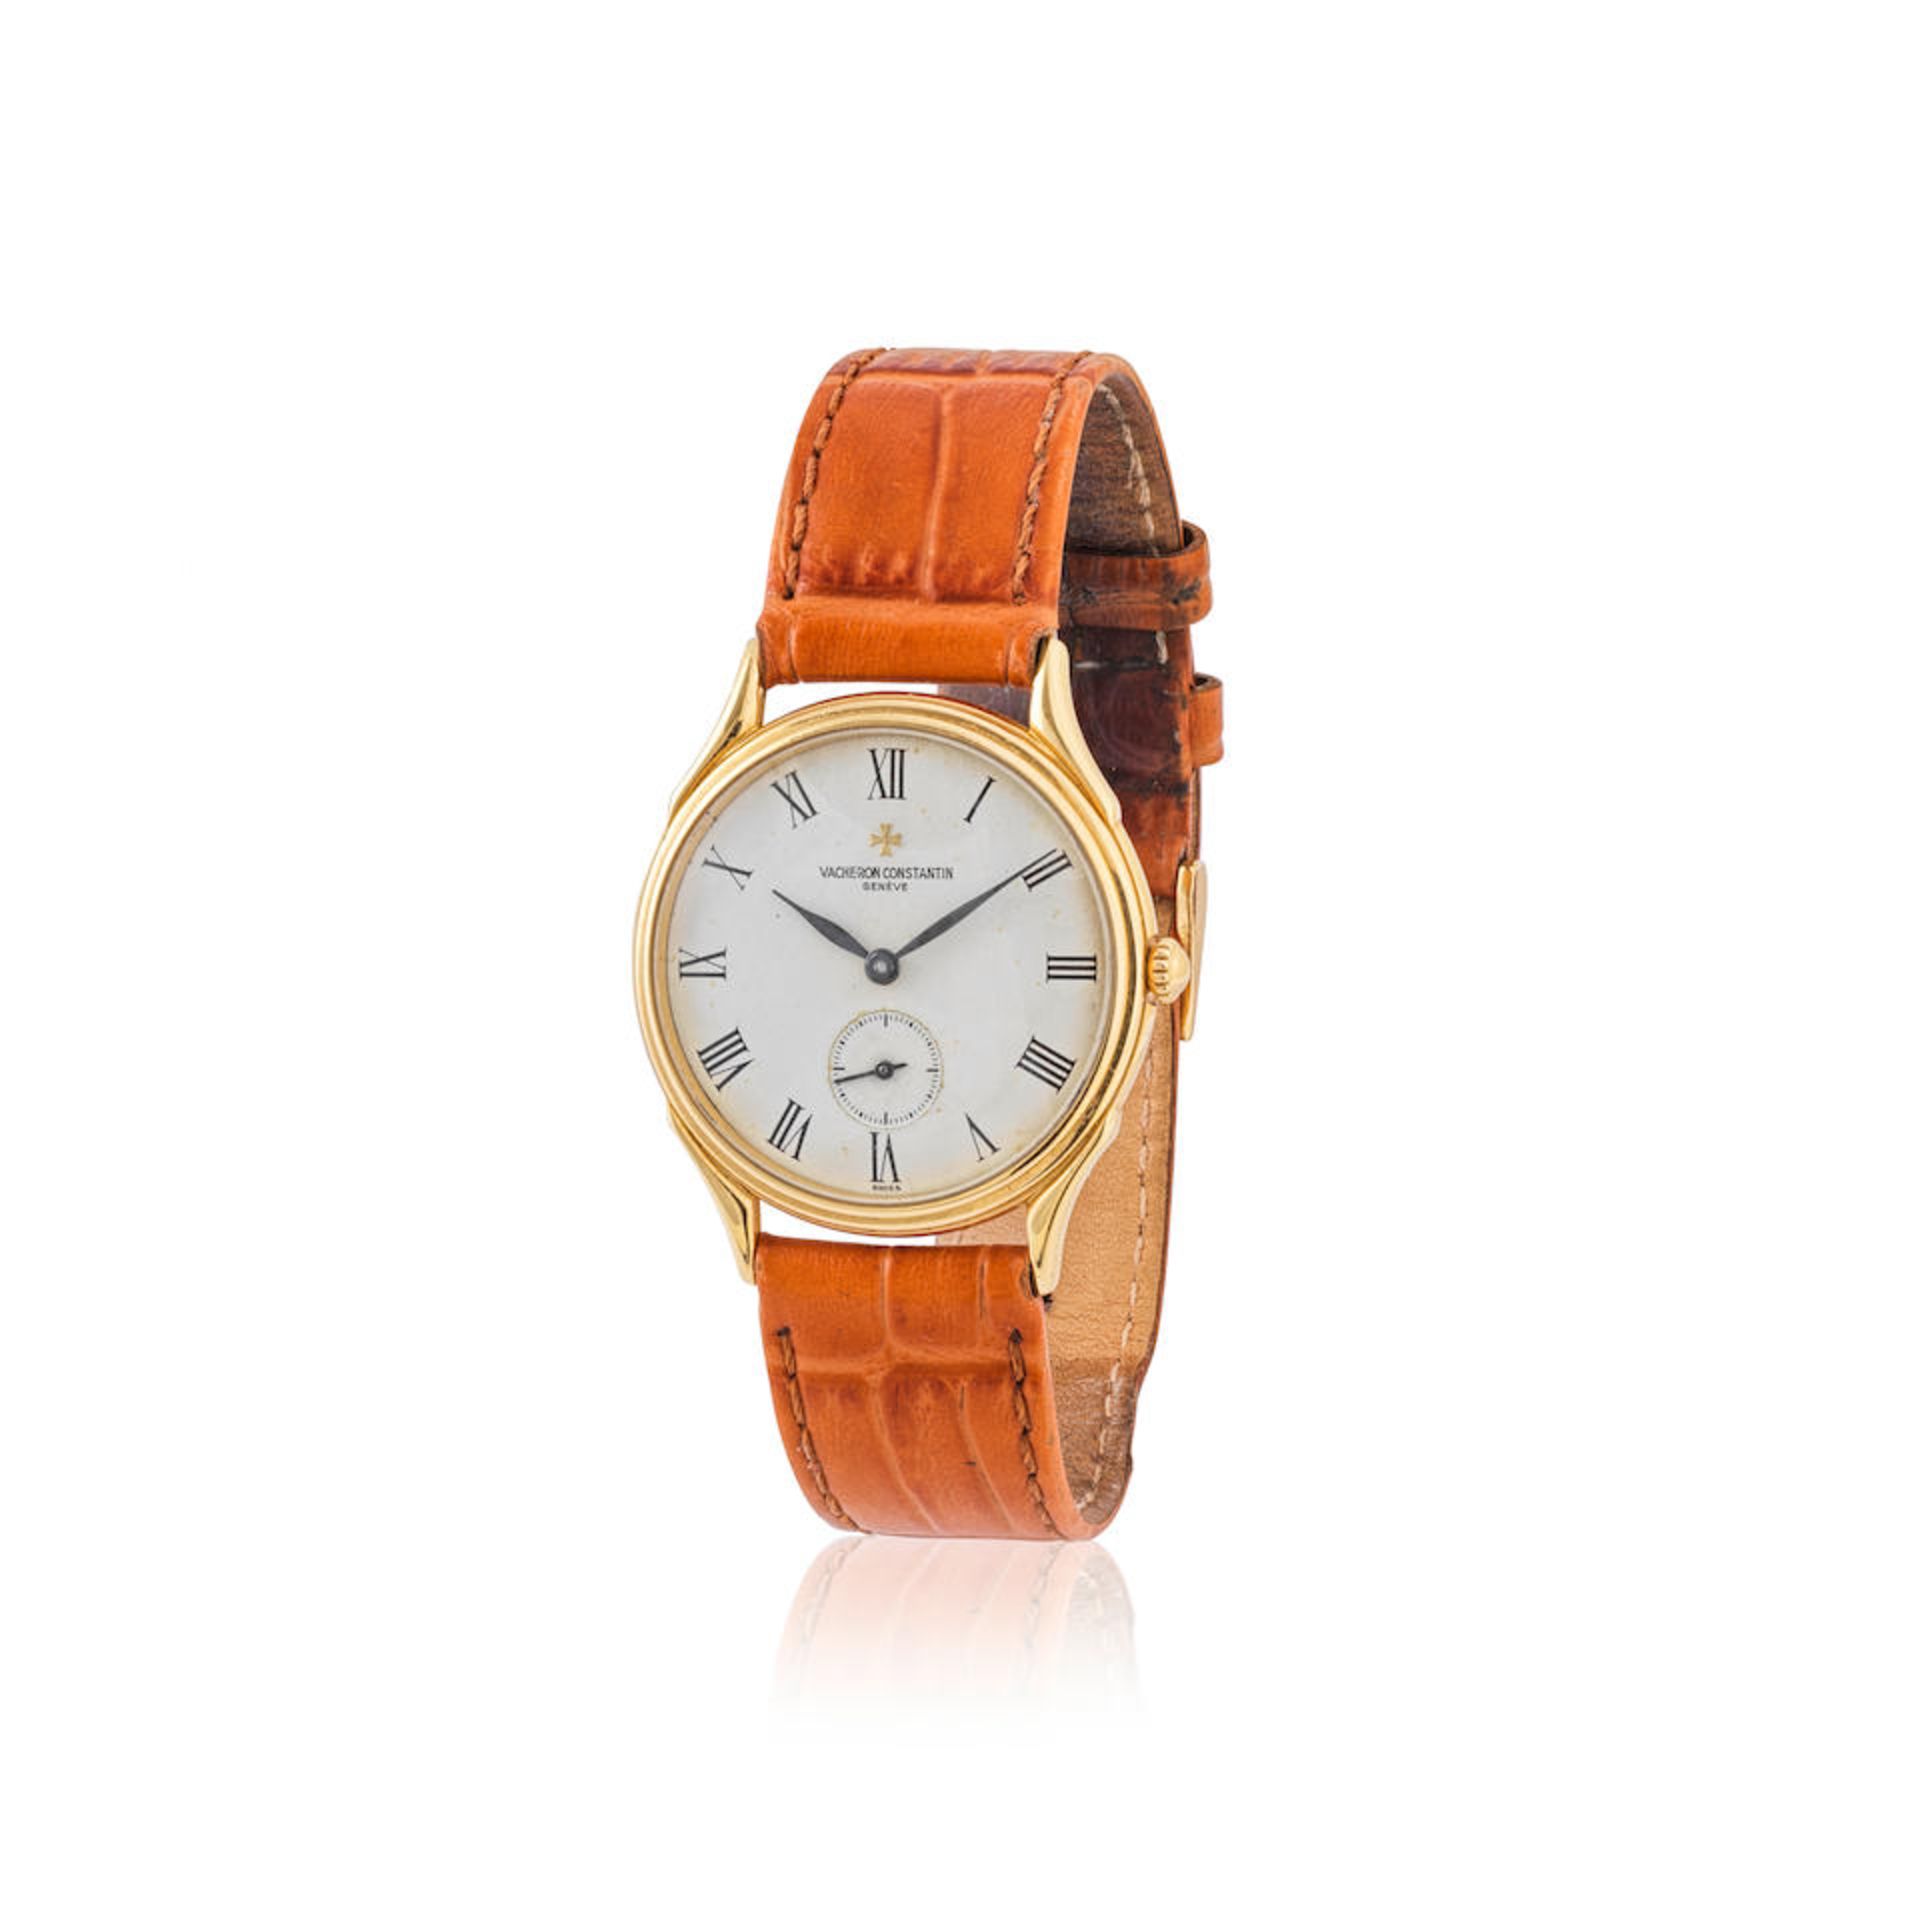 Vacheron Constantin. A fine 18K gold manual wind wristwatch Vacheron Constantin. Belle montre br...